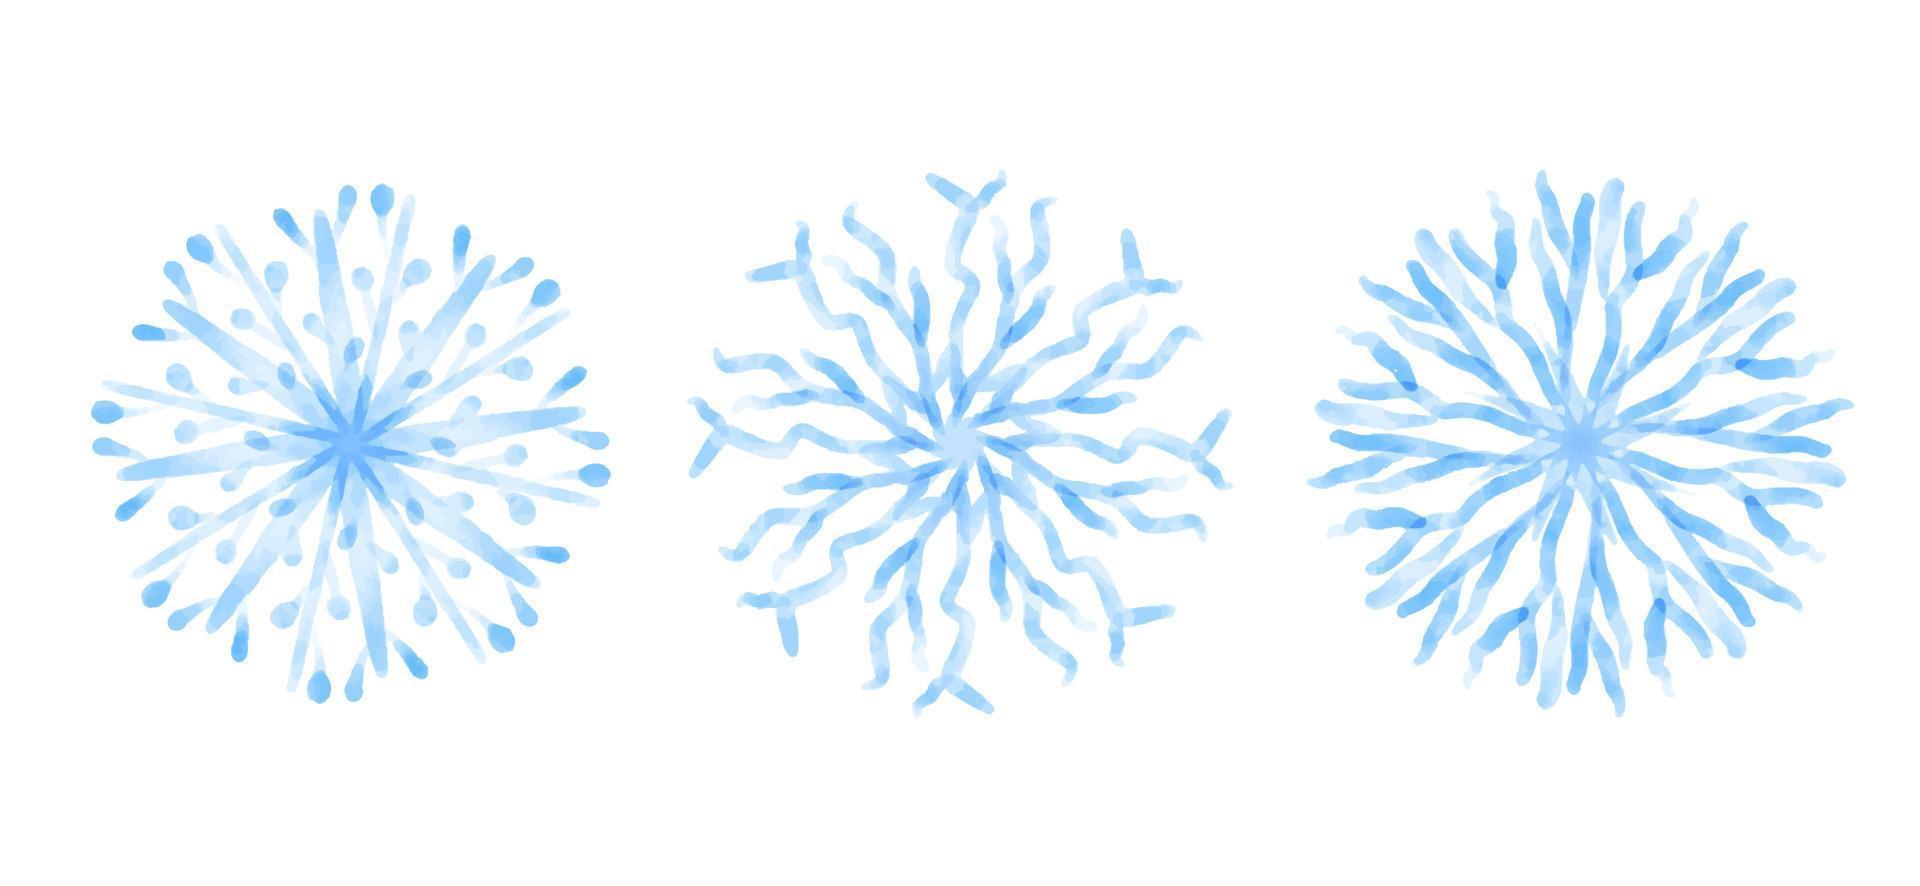 blå snöflingor isolerat på vit bakgrund, vektor illustration